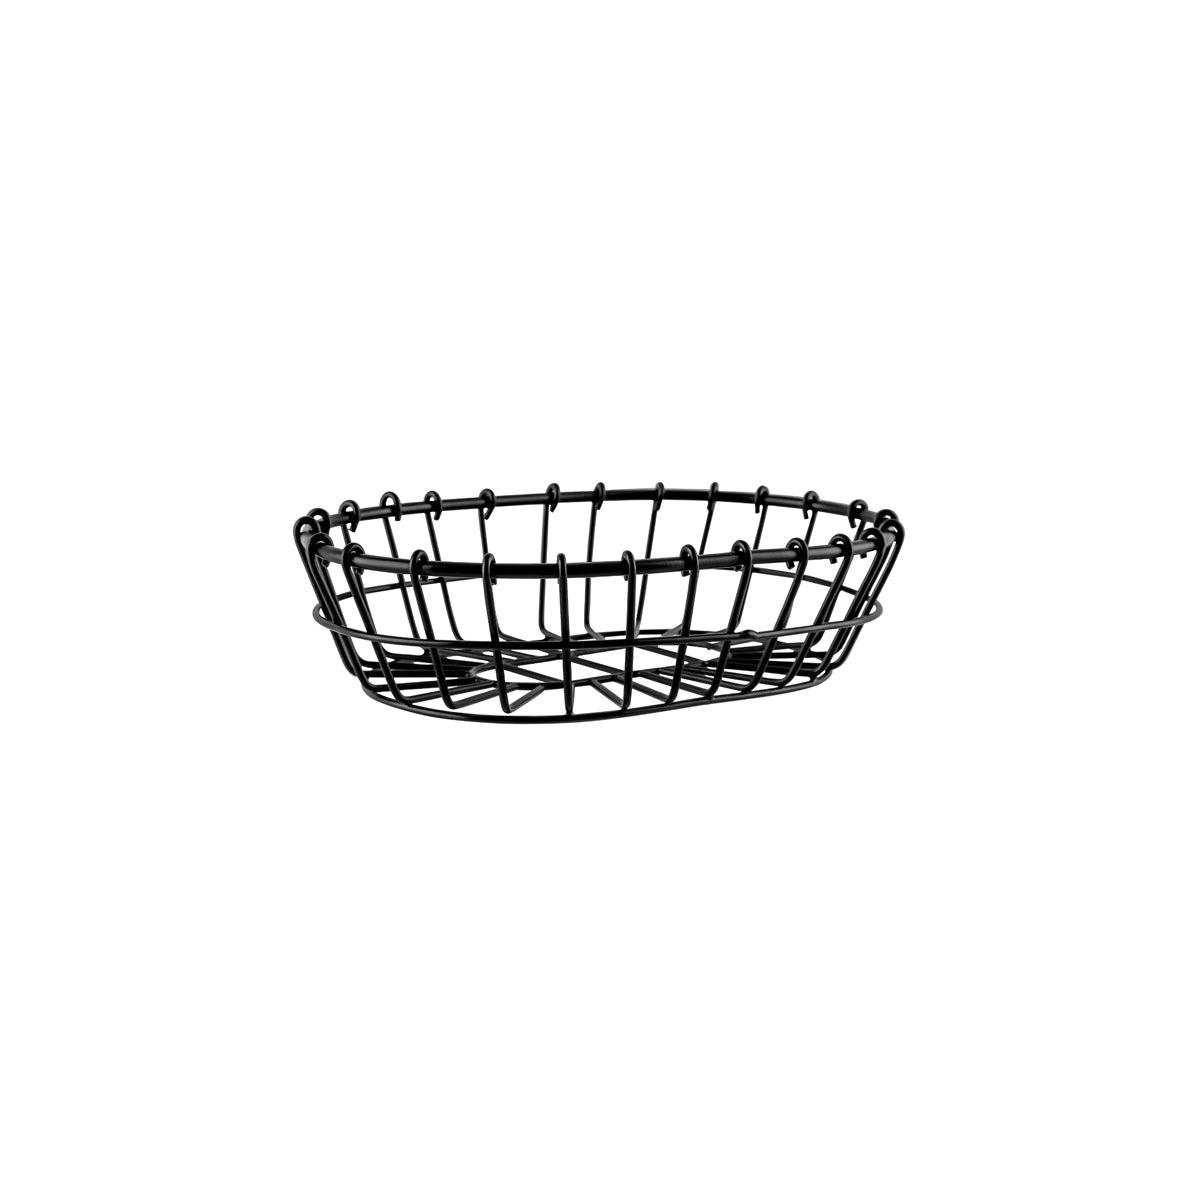 78742 Chef Inox Coney Island Patina Oval Wire Basket Black 230x155x60mm Tomkin Australia Hospitality Supplies